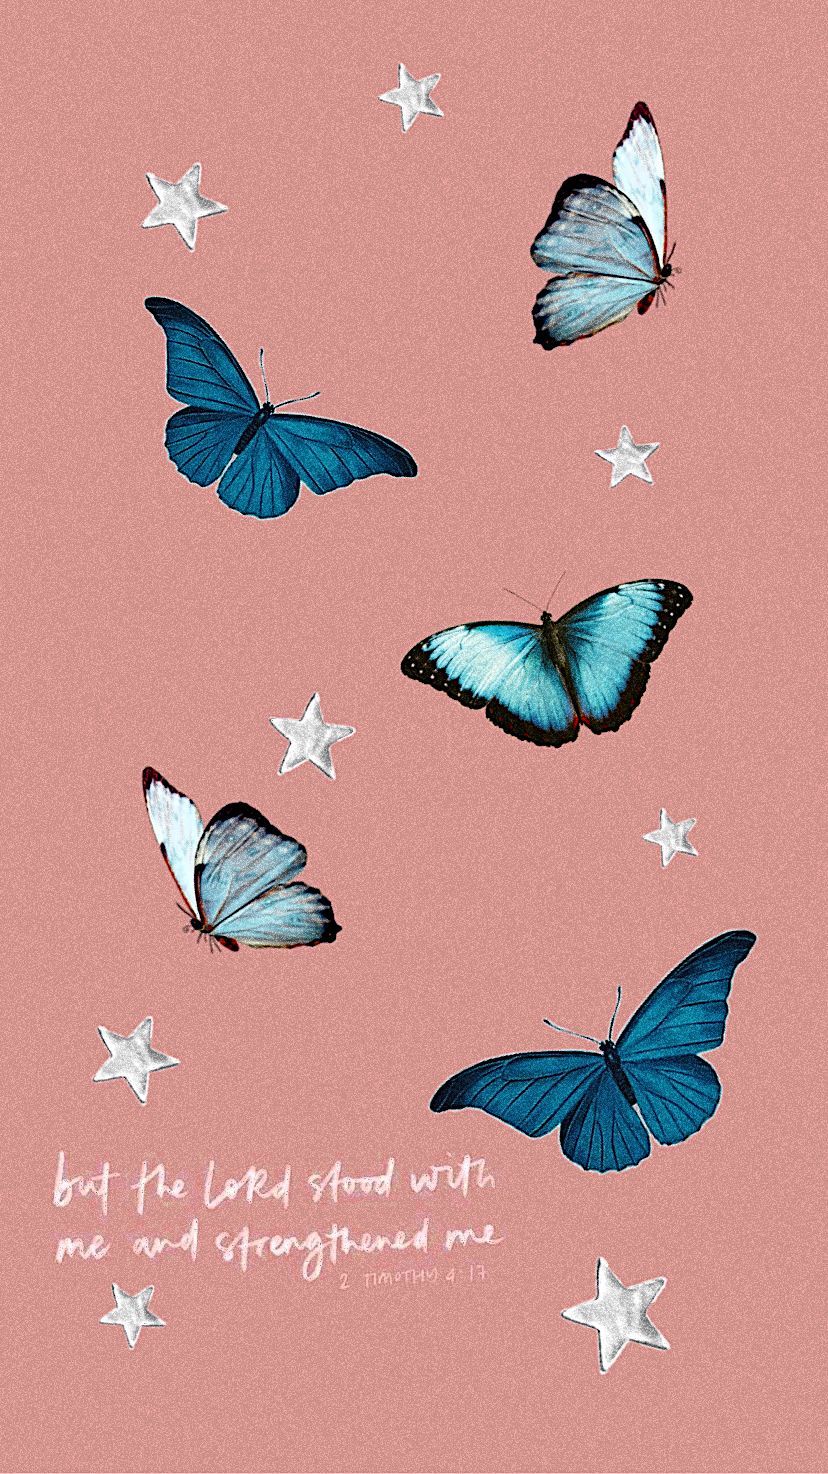 Christian Wallpaper. Blue butterfly wallpaper, Christian iphone wallpaper, Verses wallpaper